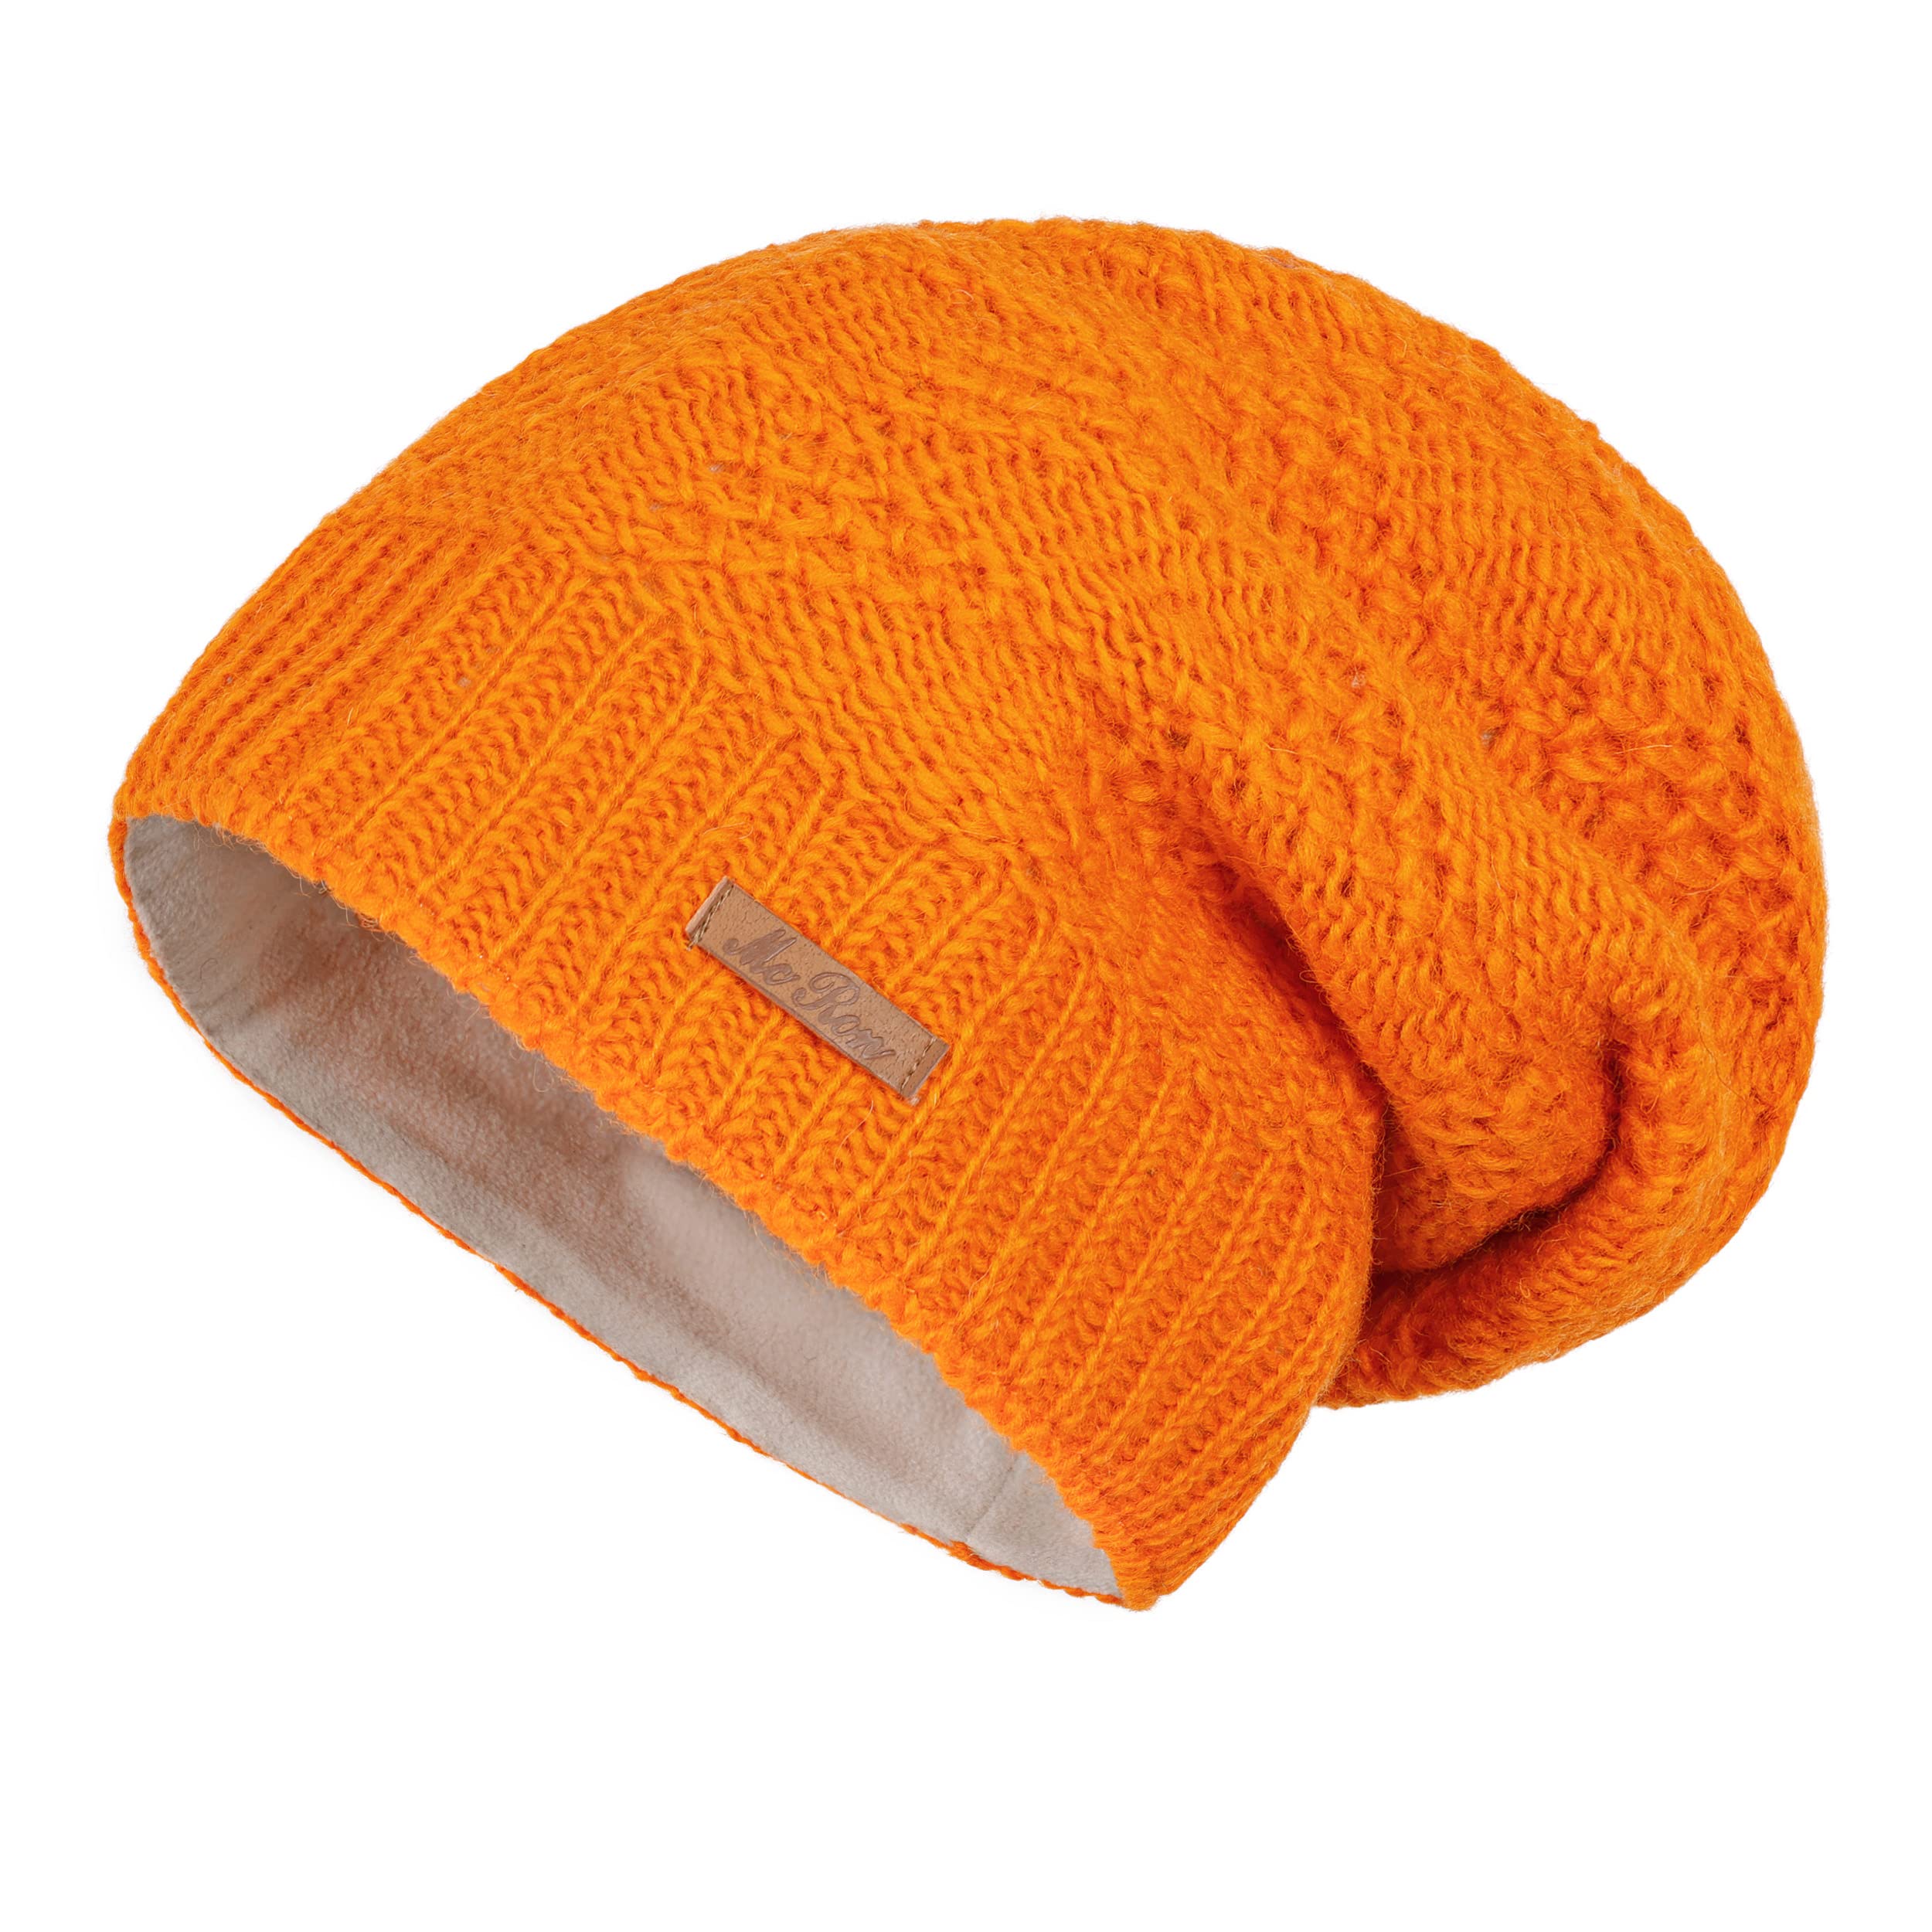 McRon Damen Gefütterte Beanie Wollmütze Modell Lina Orange 5211